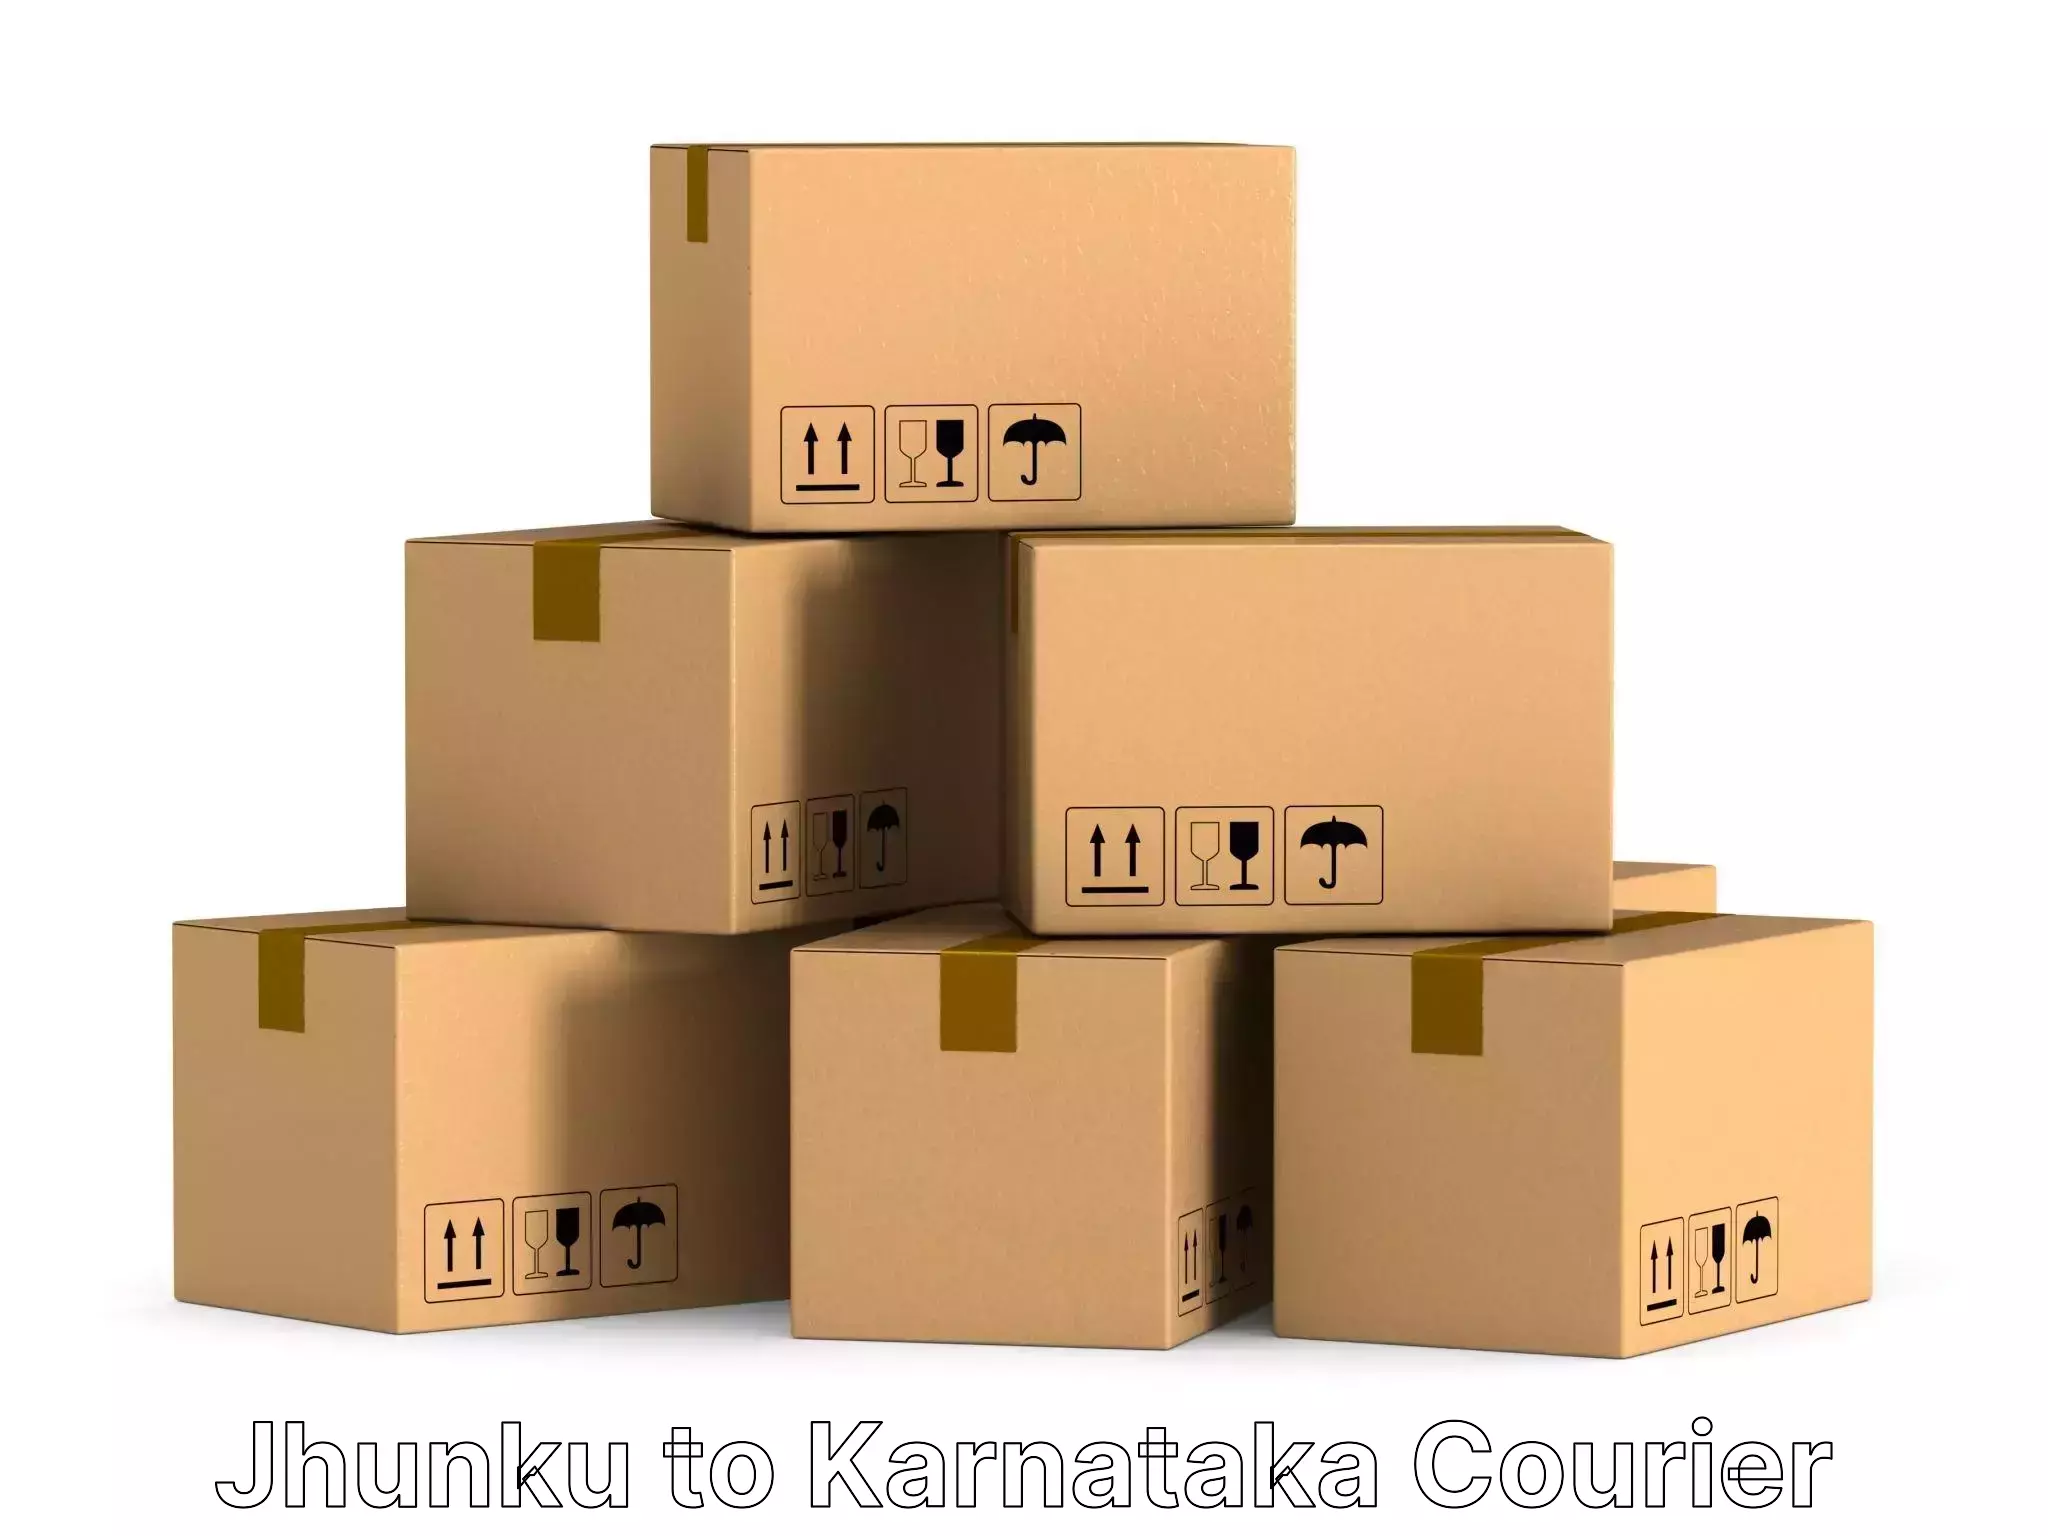 Efficient packing and moving Jhunku to Kalasa